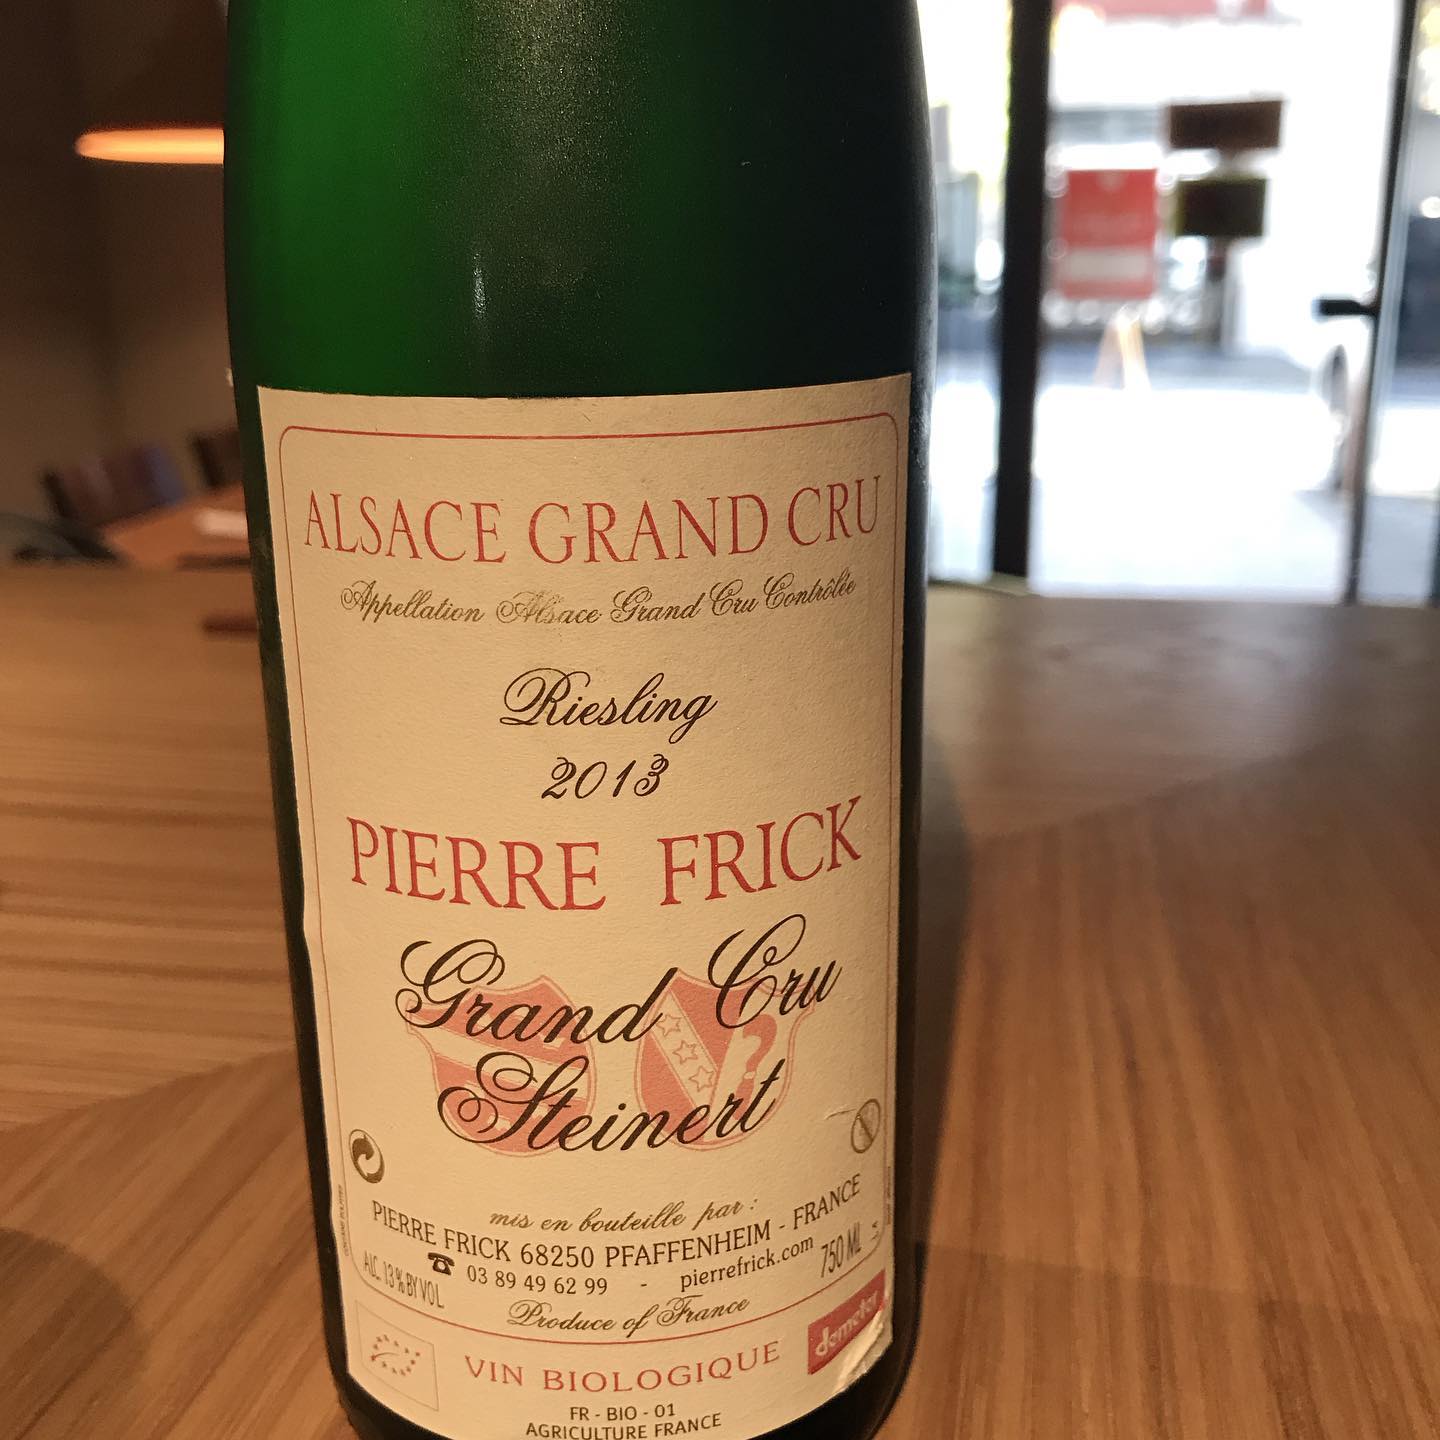 今日11/1はグラスでこれ開けてます。ピエール・フリック(フランス@アルザス)リースリング  アルザス・グランクリュ2013リースリングらしいねっとりとオイリーなペトロール香と豊かな果実味と、まだまだフレッシュな酸味が心地いいです。ピエールフリックは、私が自然派ワインの飲み始めの頃にはまっていた思い入れのある造り手なんです。久しぶりに開けましたが旨さ健在ですねー本日カウンター空いています。よろしくお願いします！#イルフェソワフ #ワイン#日本酒 #薬院#警固#ピノブランにはまっていた